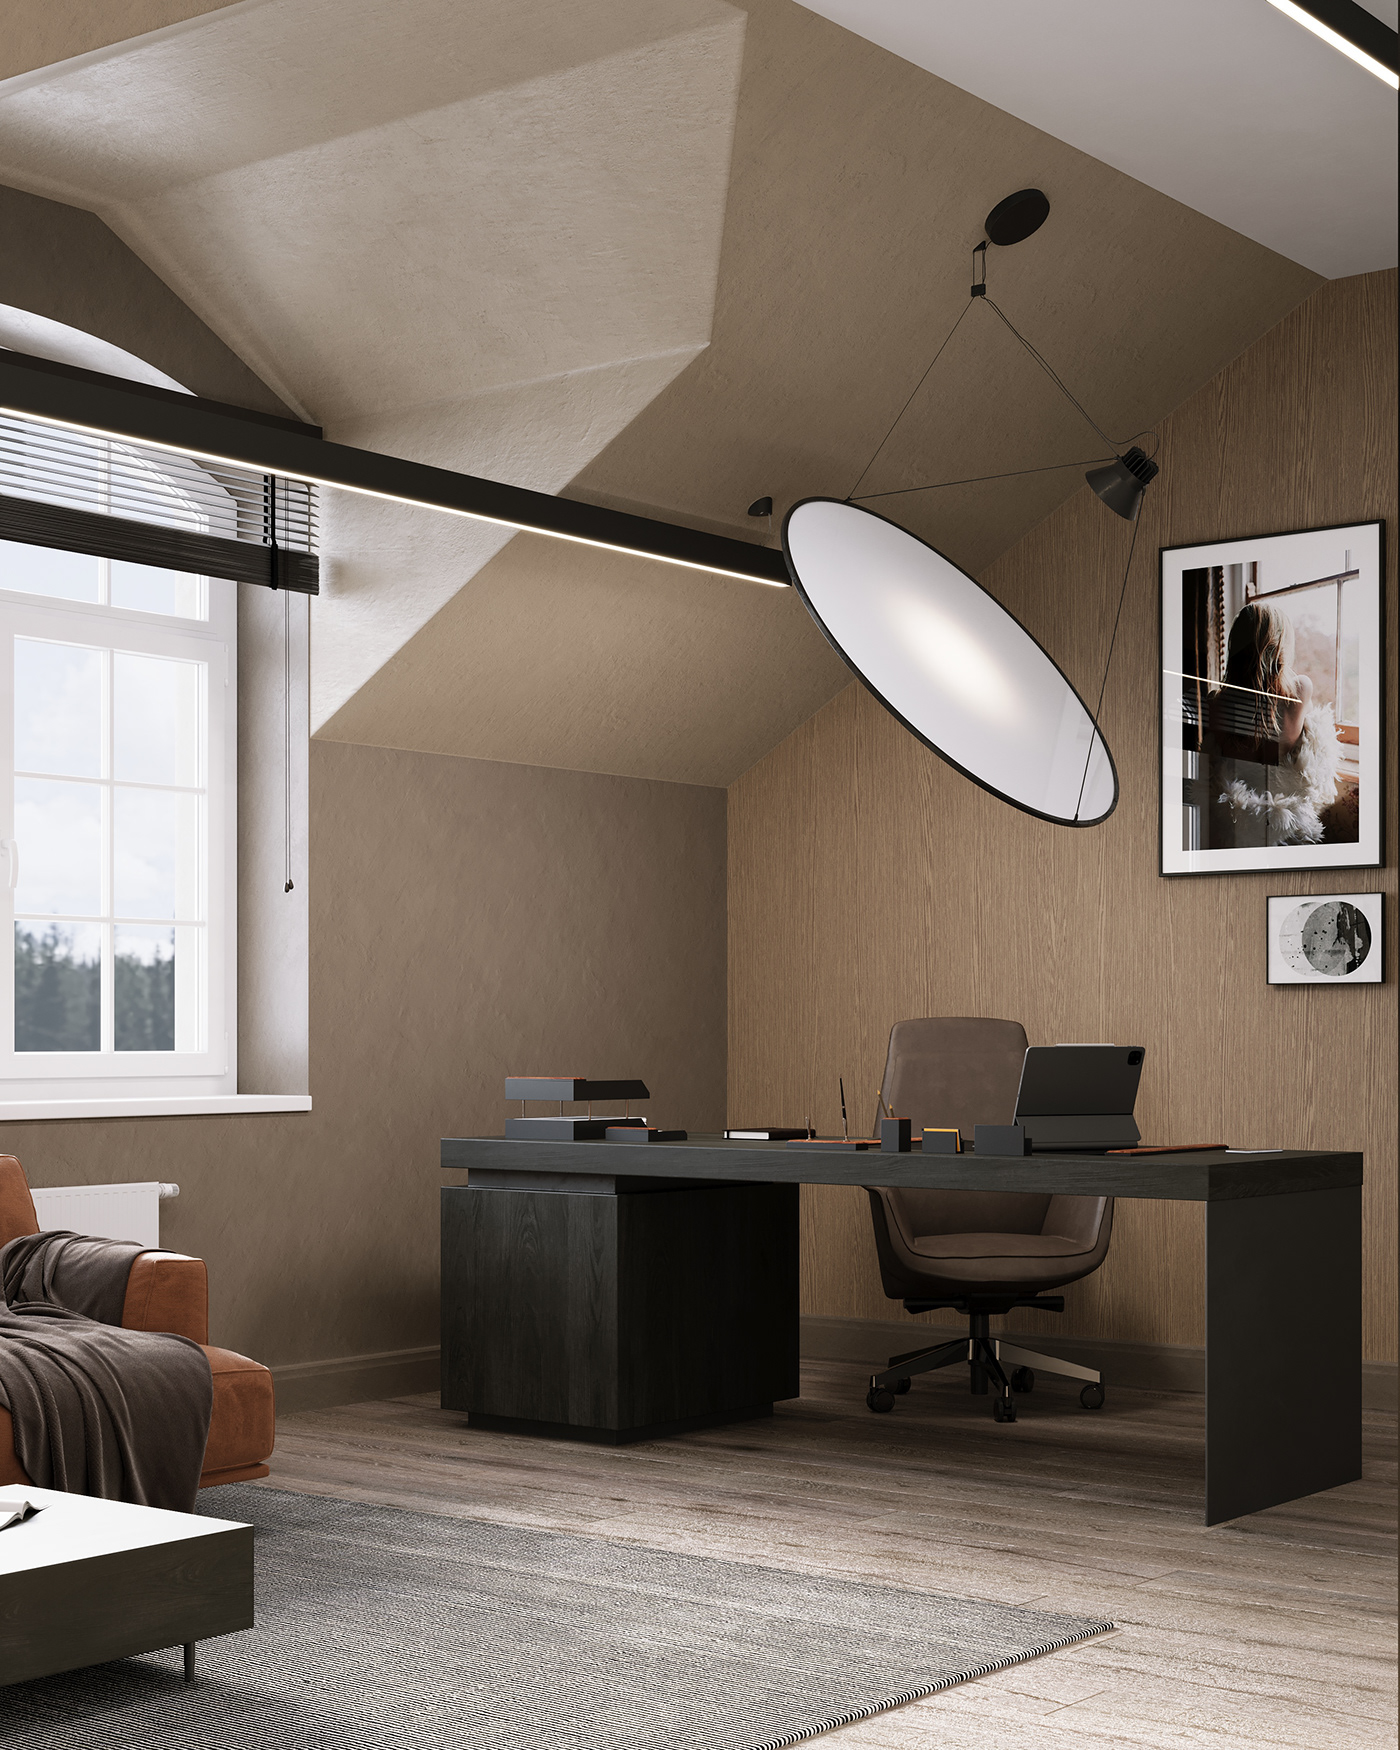 3ds max Render visualization interior design  corona